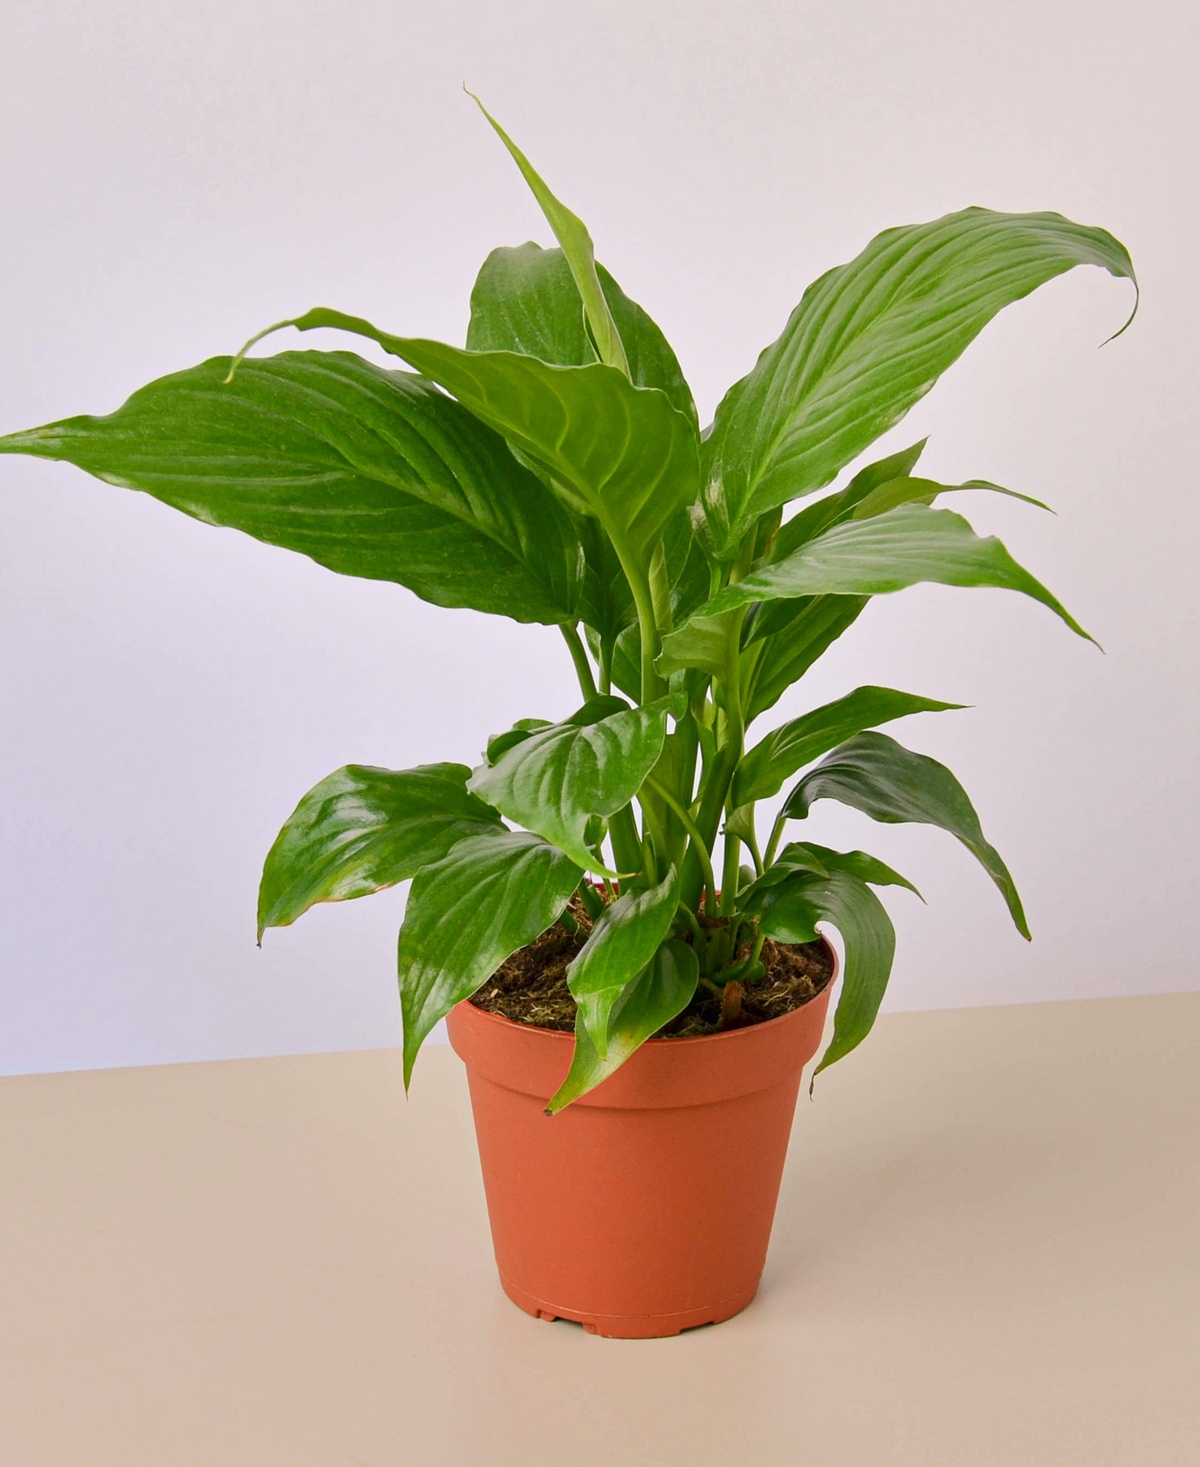 Spathiphyllum 'Peace Lily' Live Plant, 4" Pot